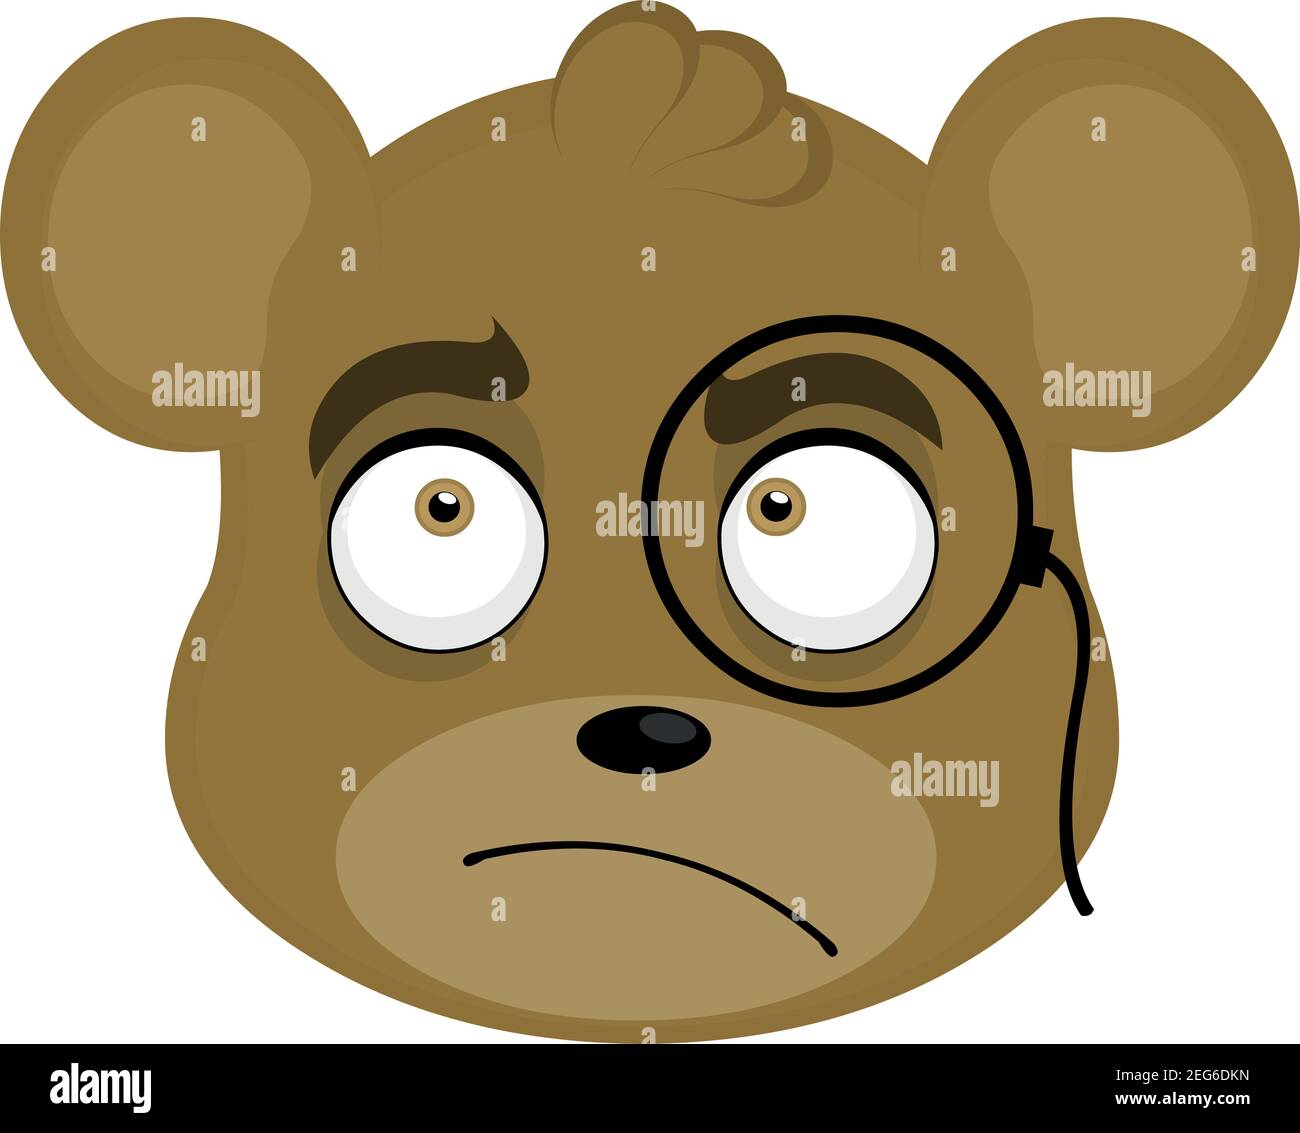 Vektor-Illustration Cartoon eines Teddybären Kopf mit einem nachdenklichen Ausdruck, trägt ein Monocle Stock Vektor